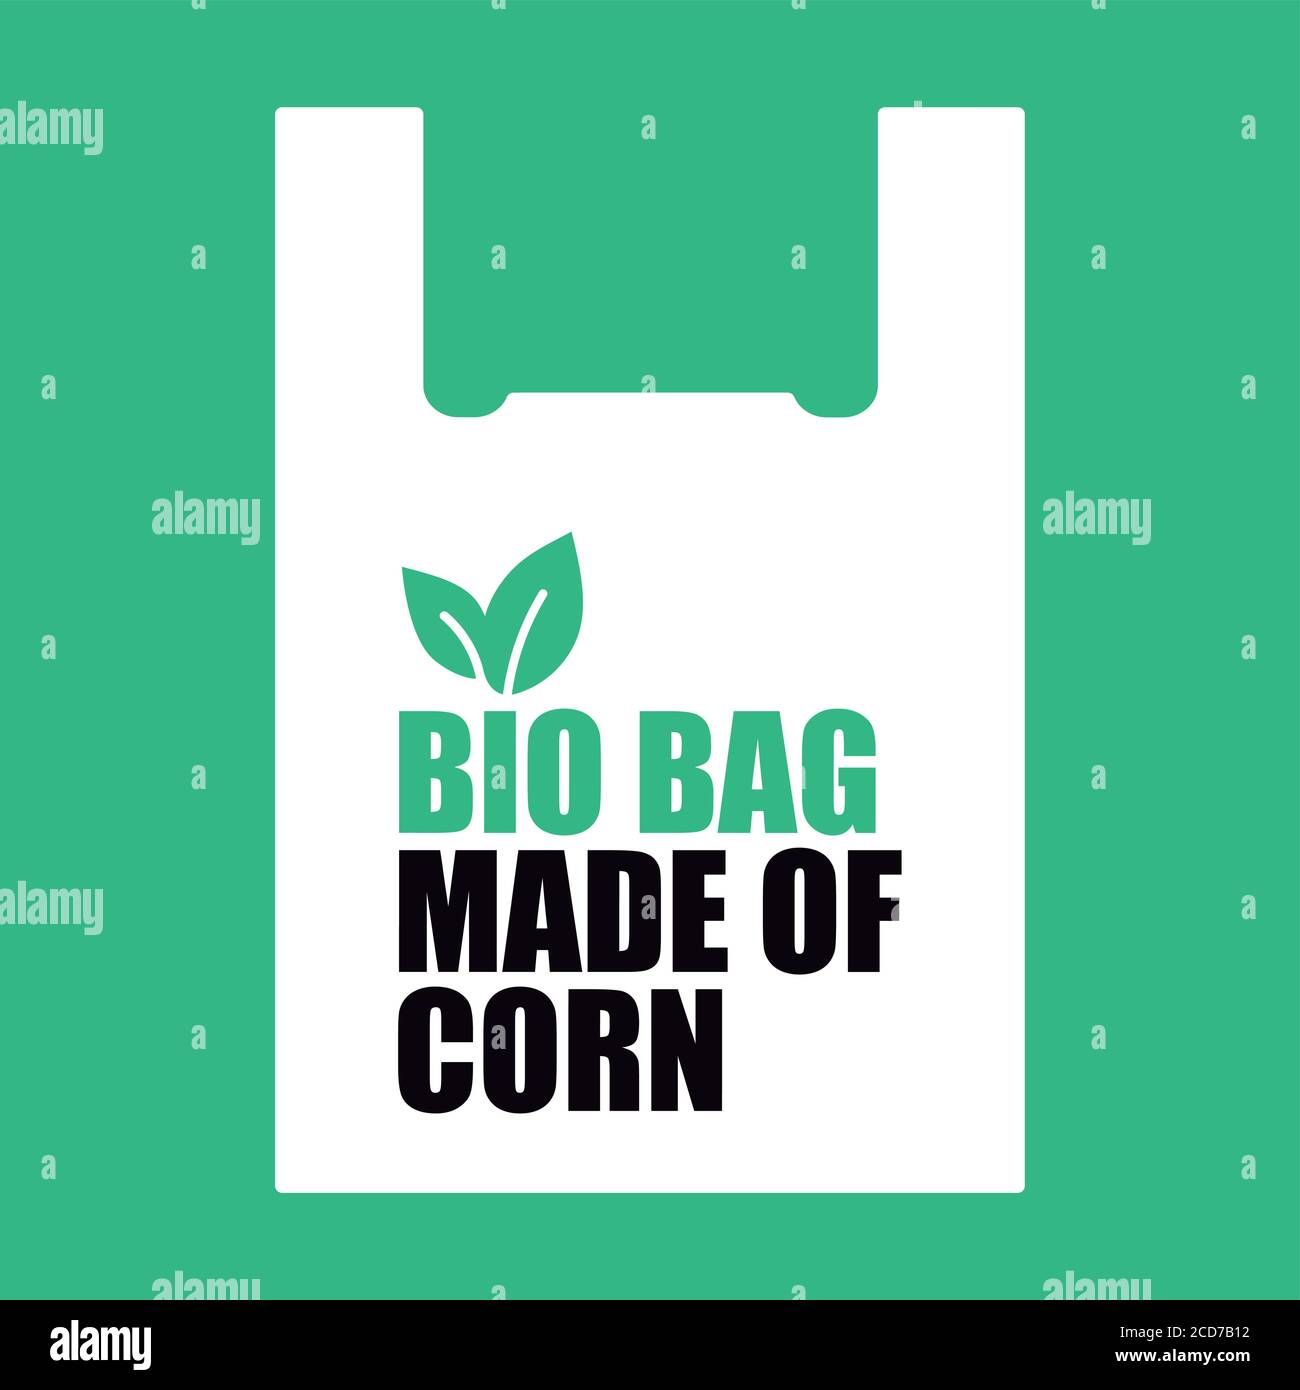 Bio-Beutel aus Mais. Design für Bio-Tasche. 100% biologisch abbaubar und kompostierbar. Kunststoff frei. Stock Vektor